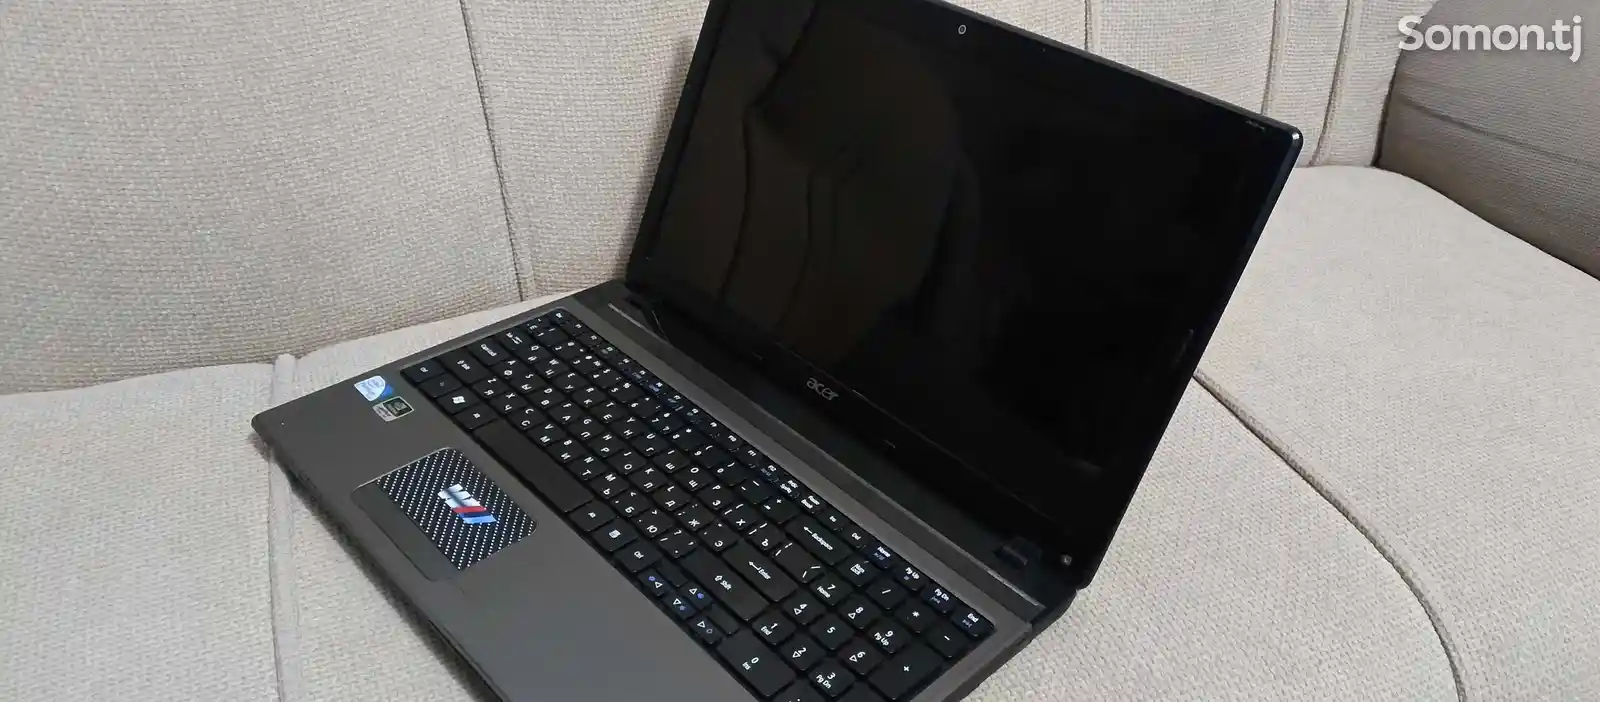 Ноутбук Aser aspire 5750, HDD 500,-6